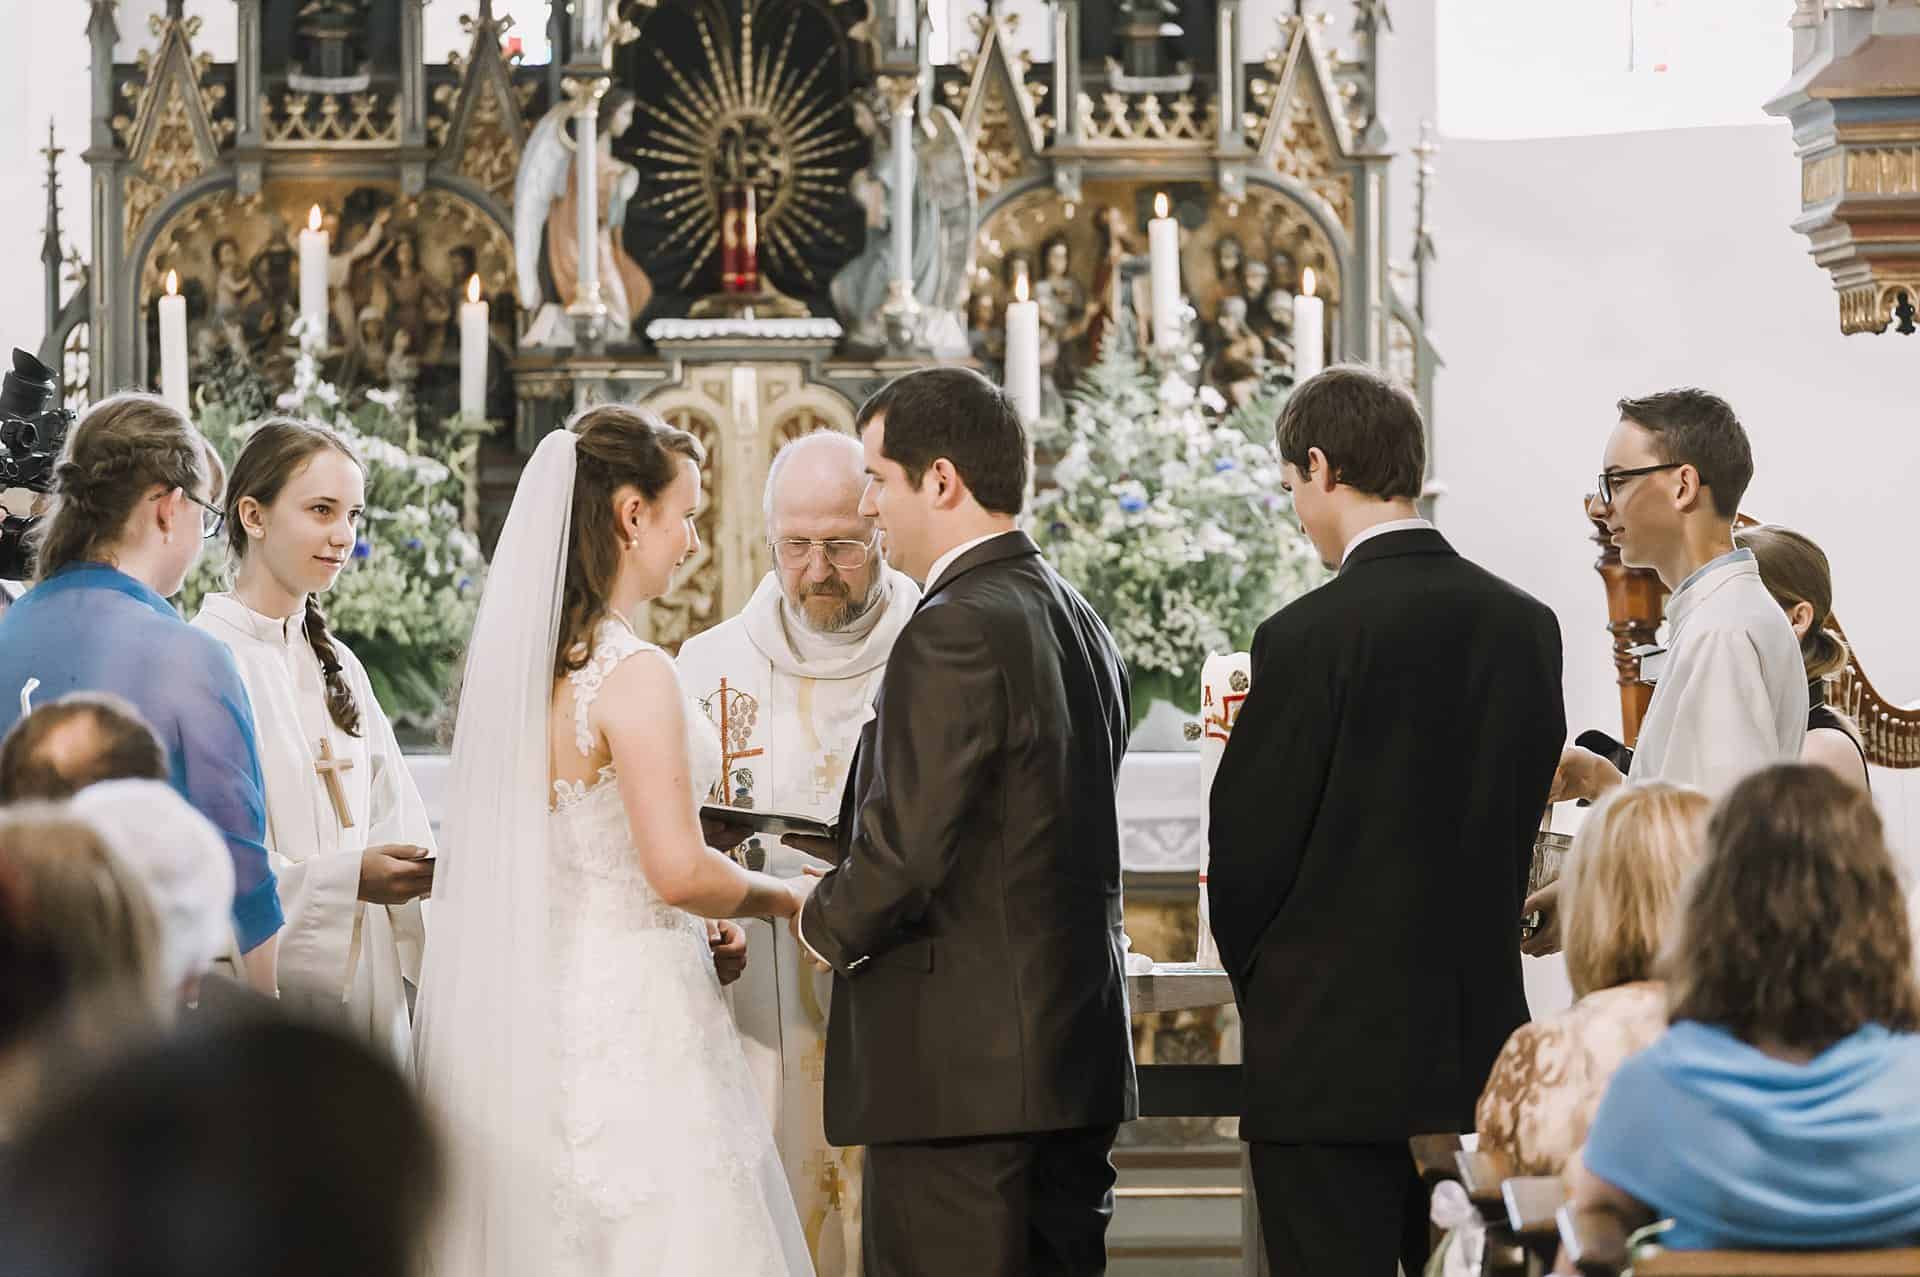 Eine Braut und ein Bräutigam geben sich in einer Kirche das Ja-Wort.